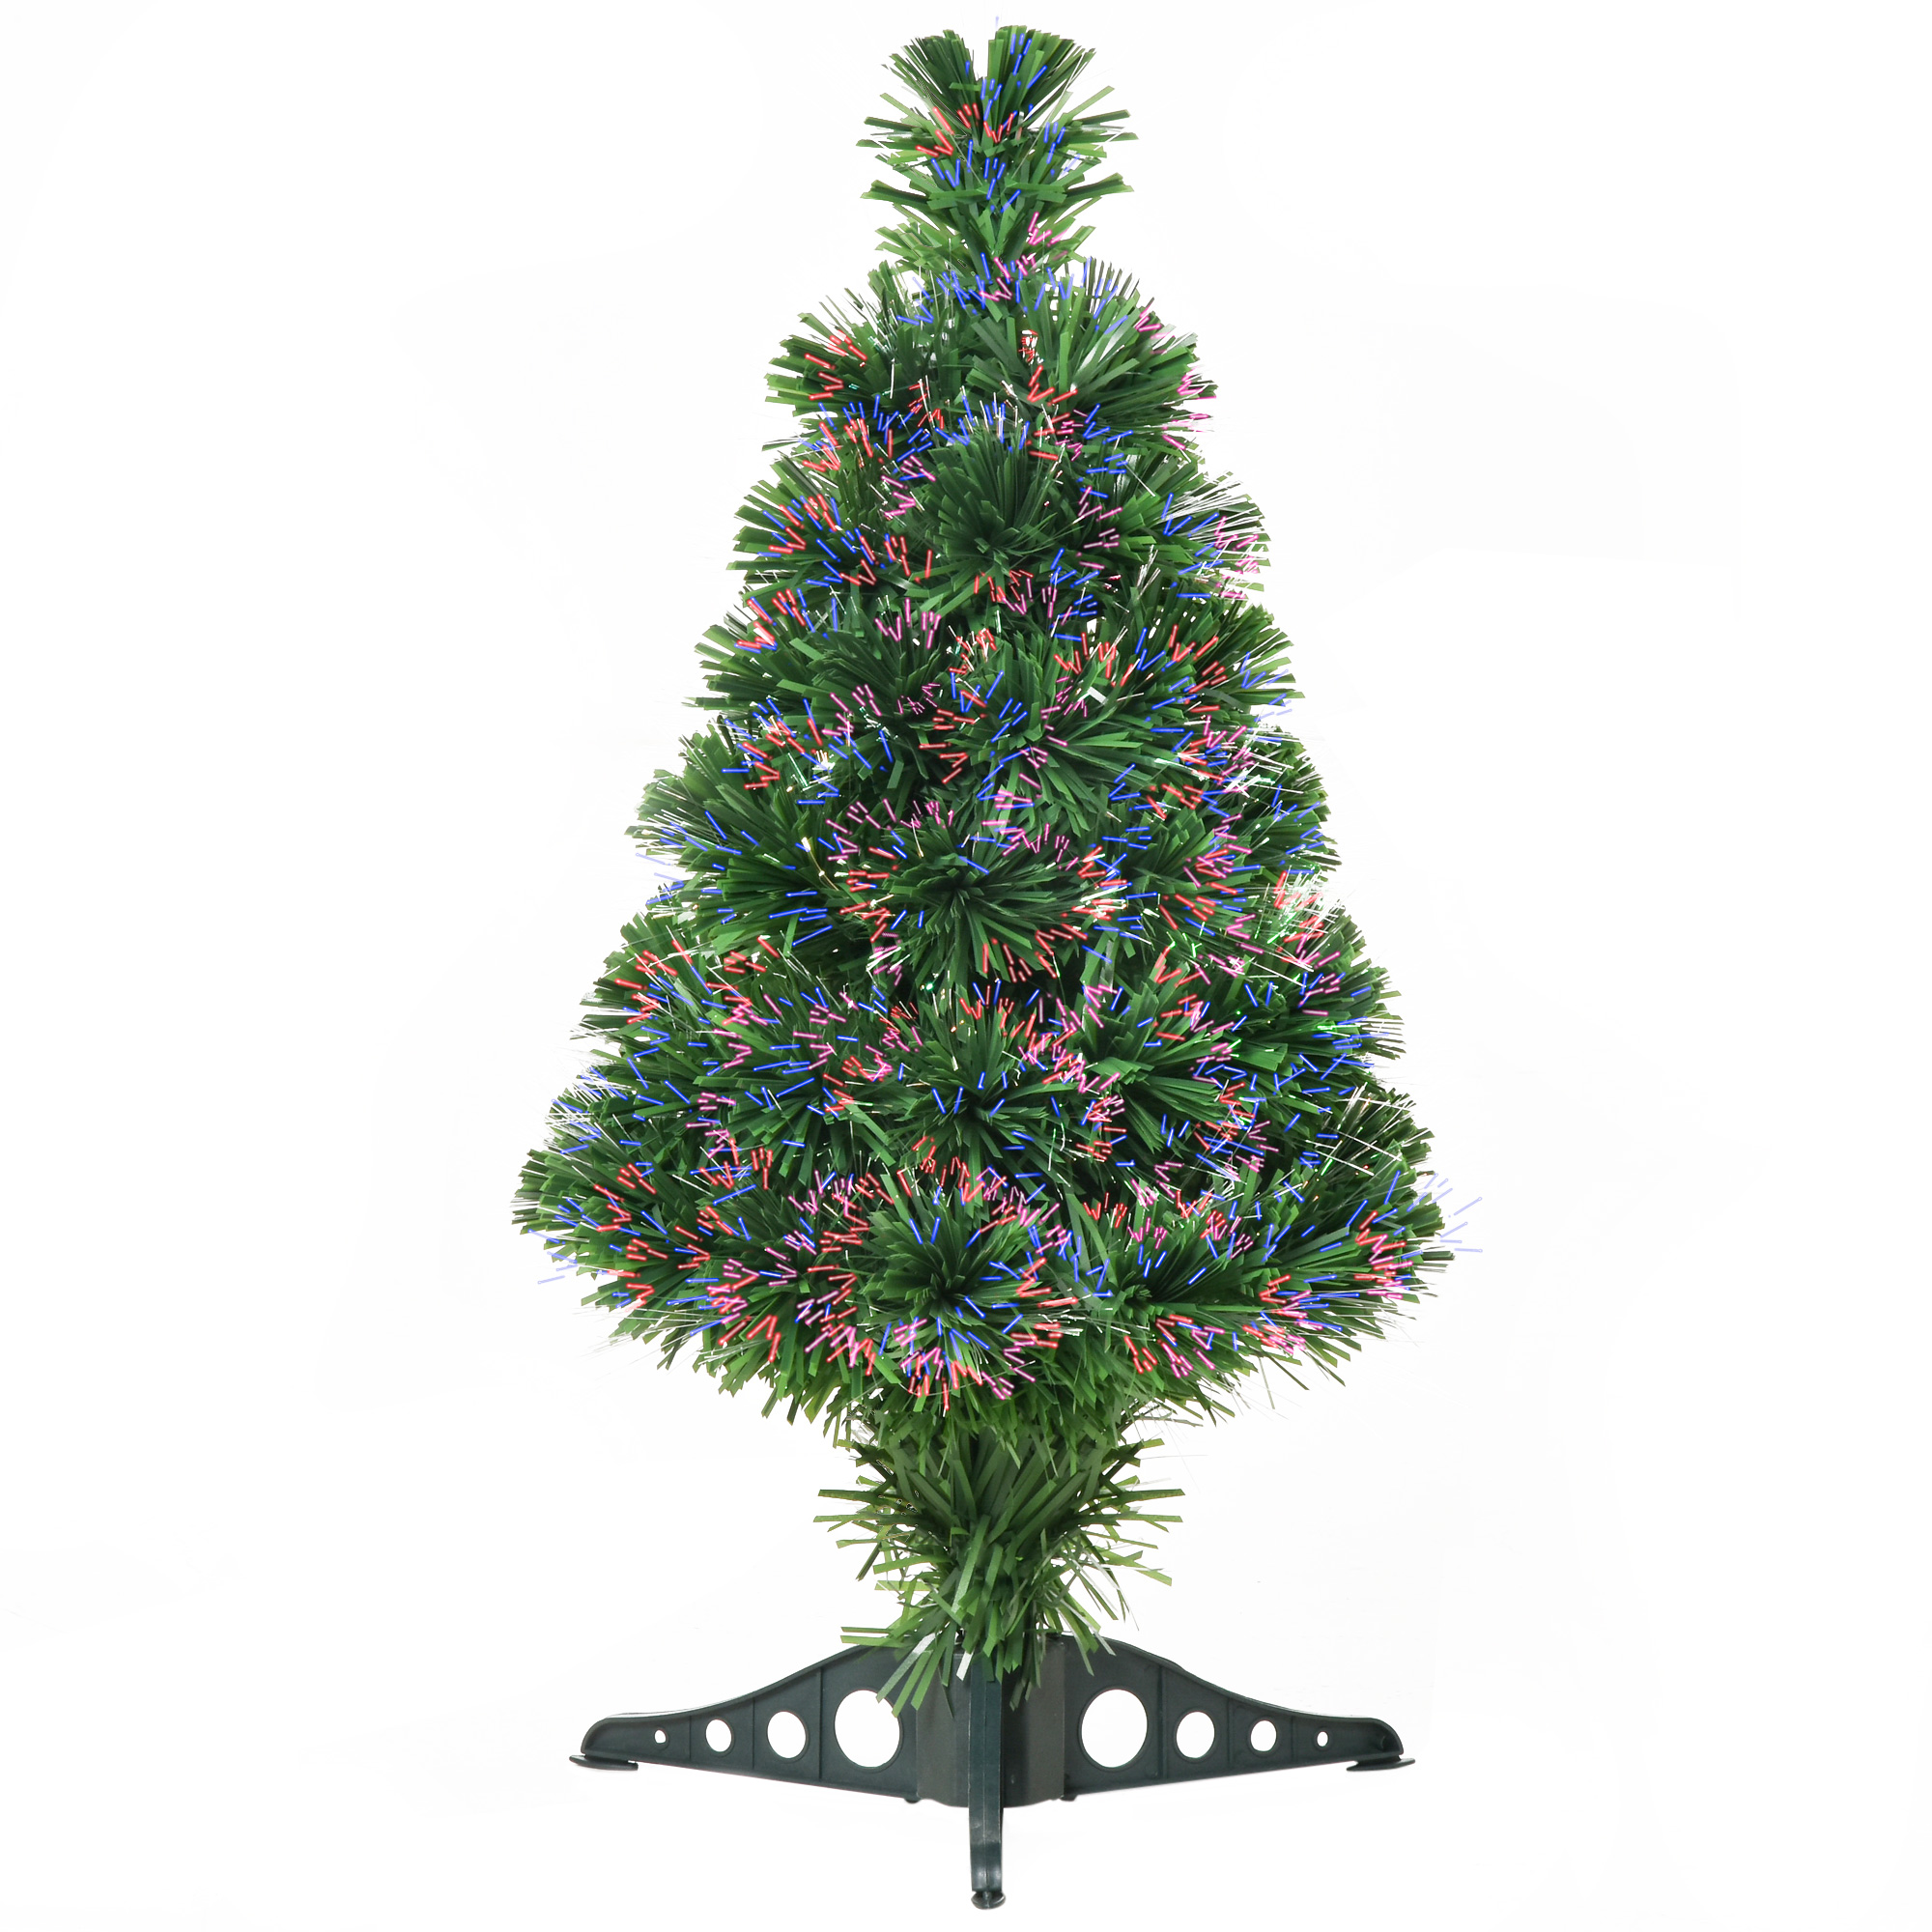 Τεχνητό Χριστουγεννιάτικο Δέντρο με 55 Κλαδιά και Οπτικές Ίνες με 4 Χρώματα 60 cm HOMCOM 830-176